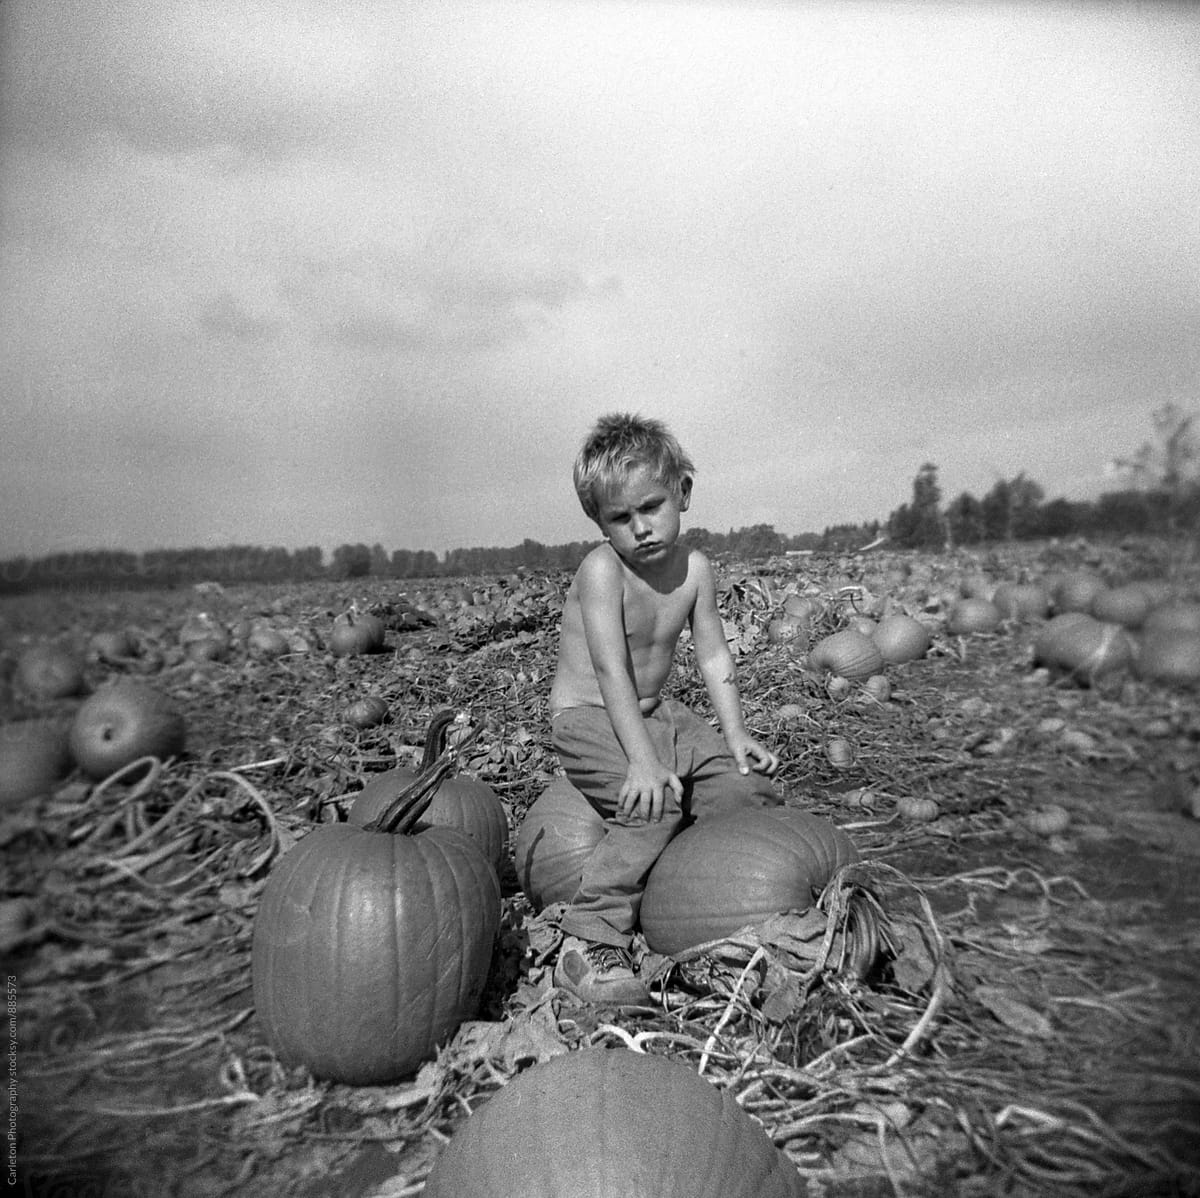 Grumpy shirtless boy in pumpkin patch